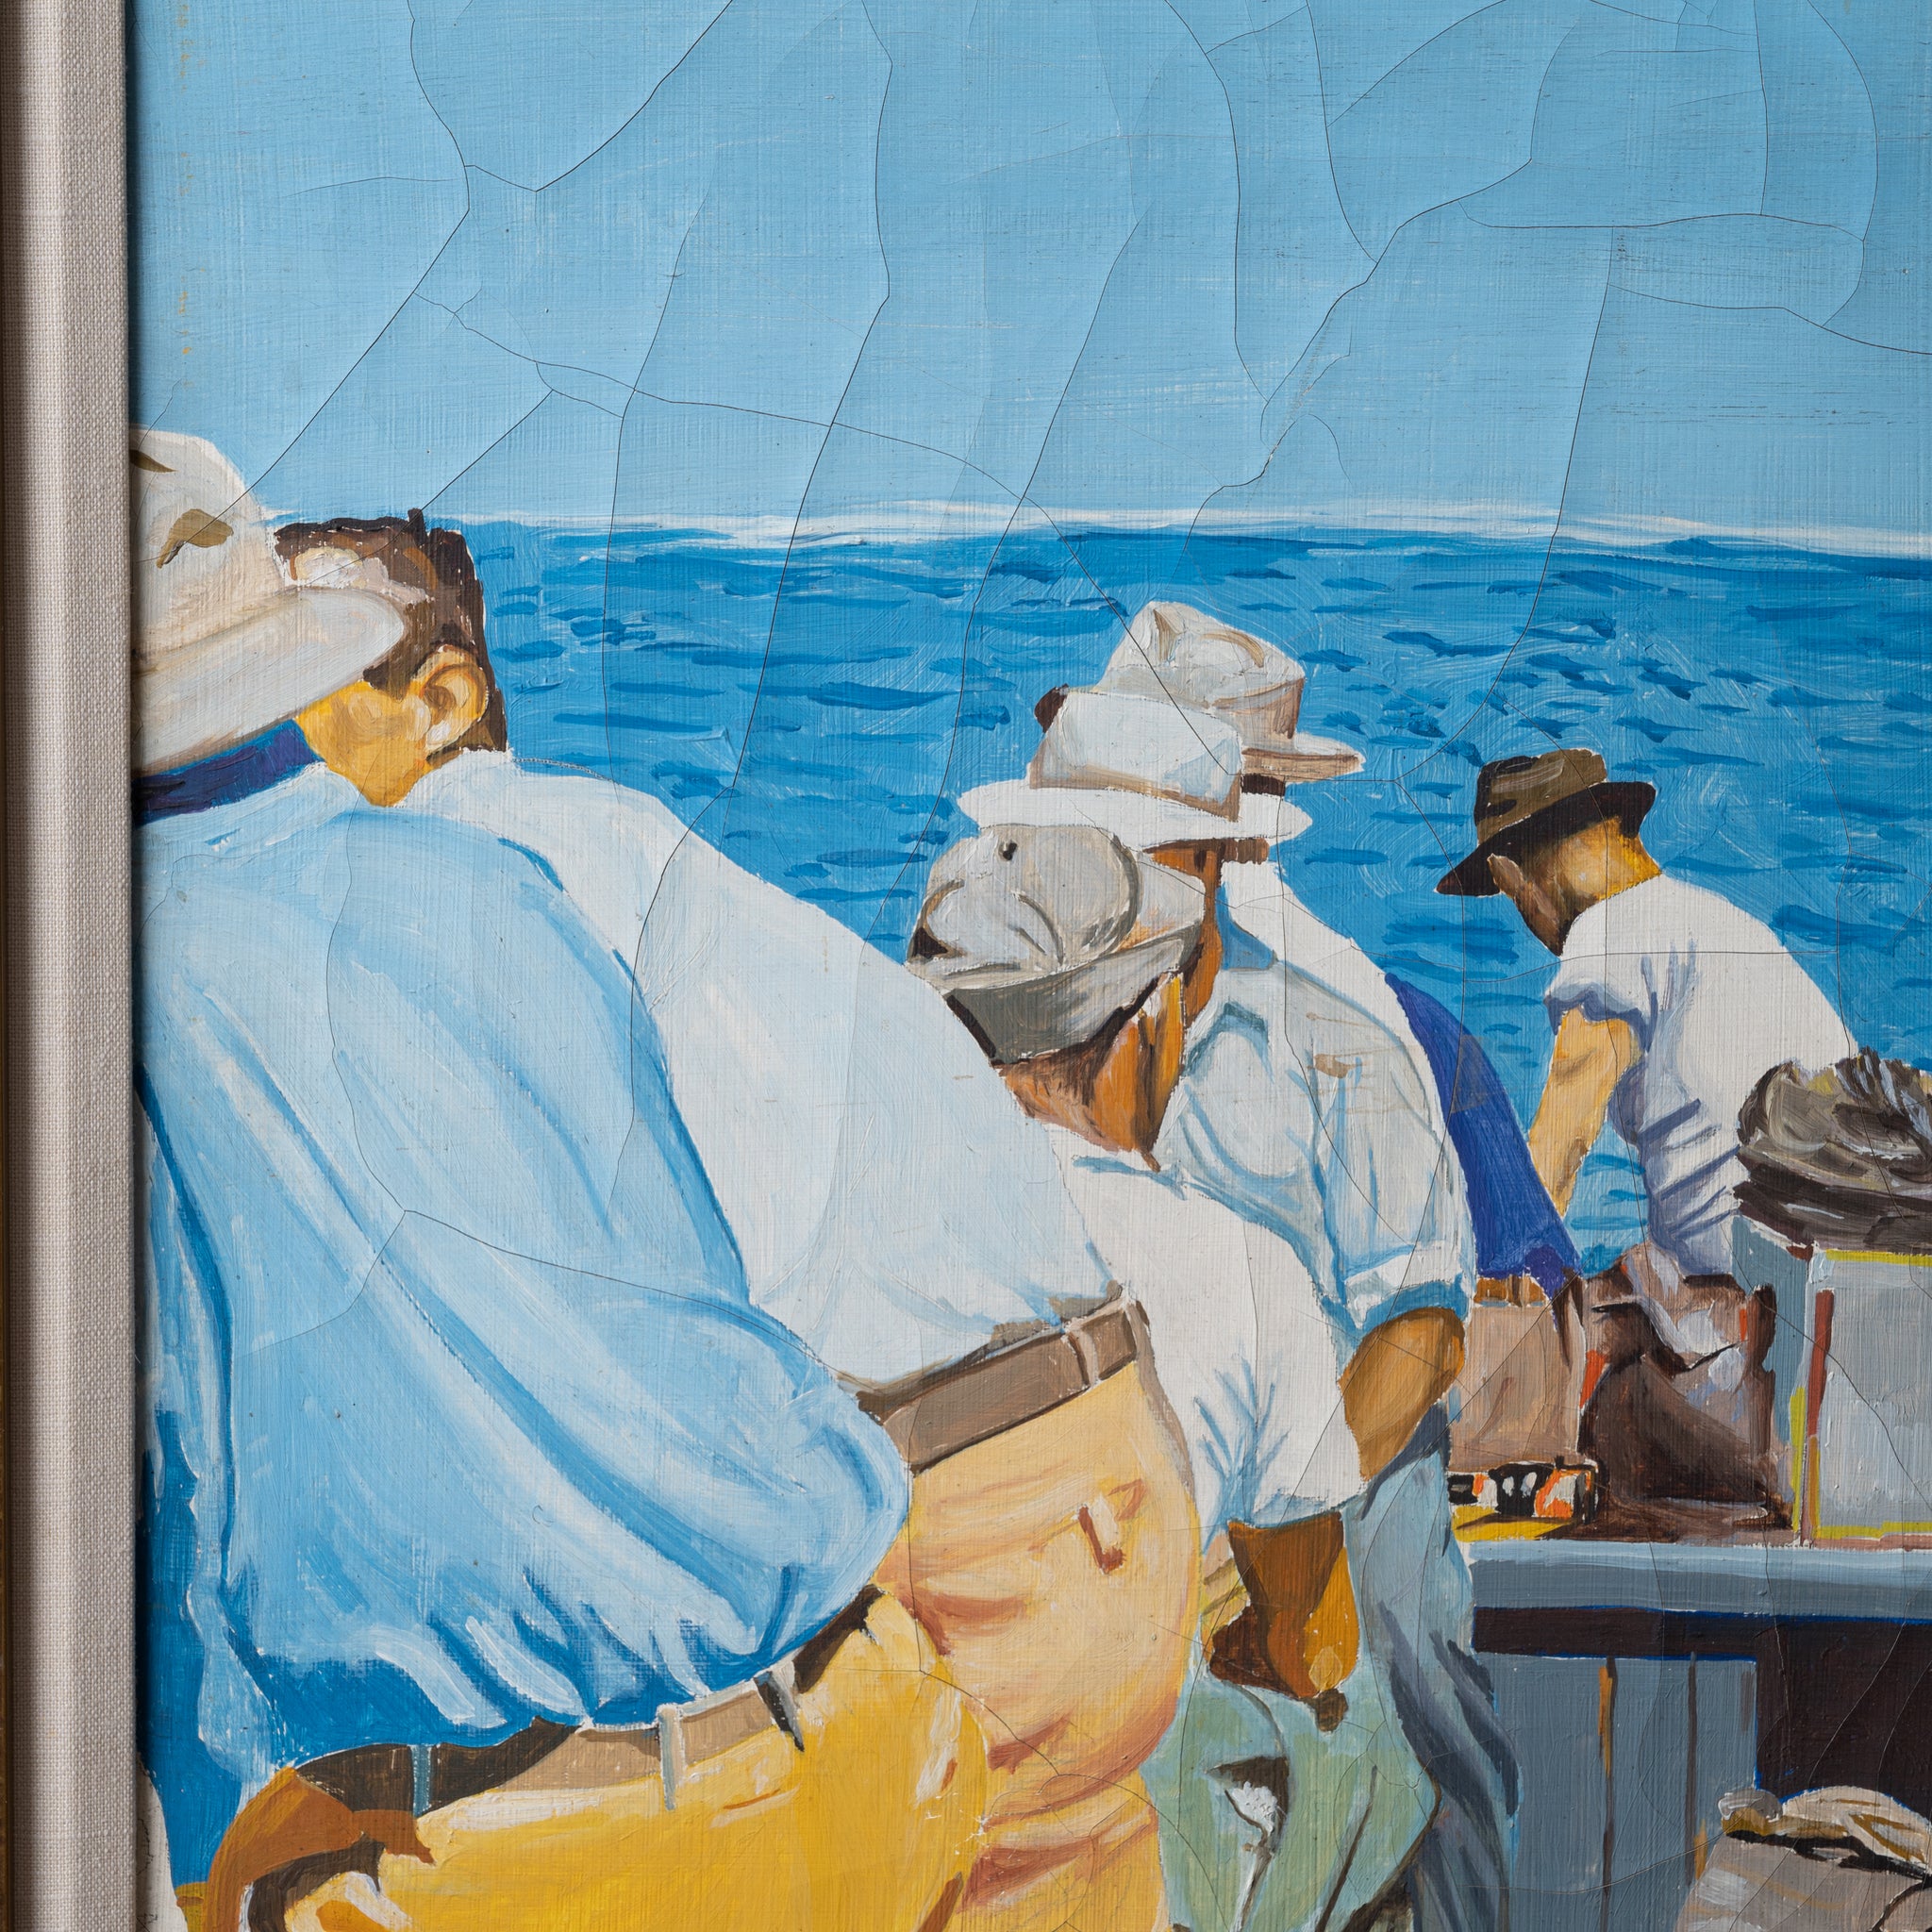 Fishermen Painting, 1940s